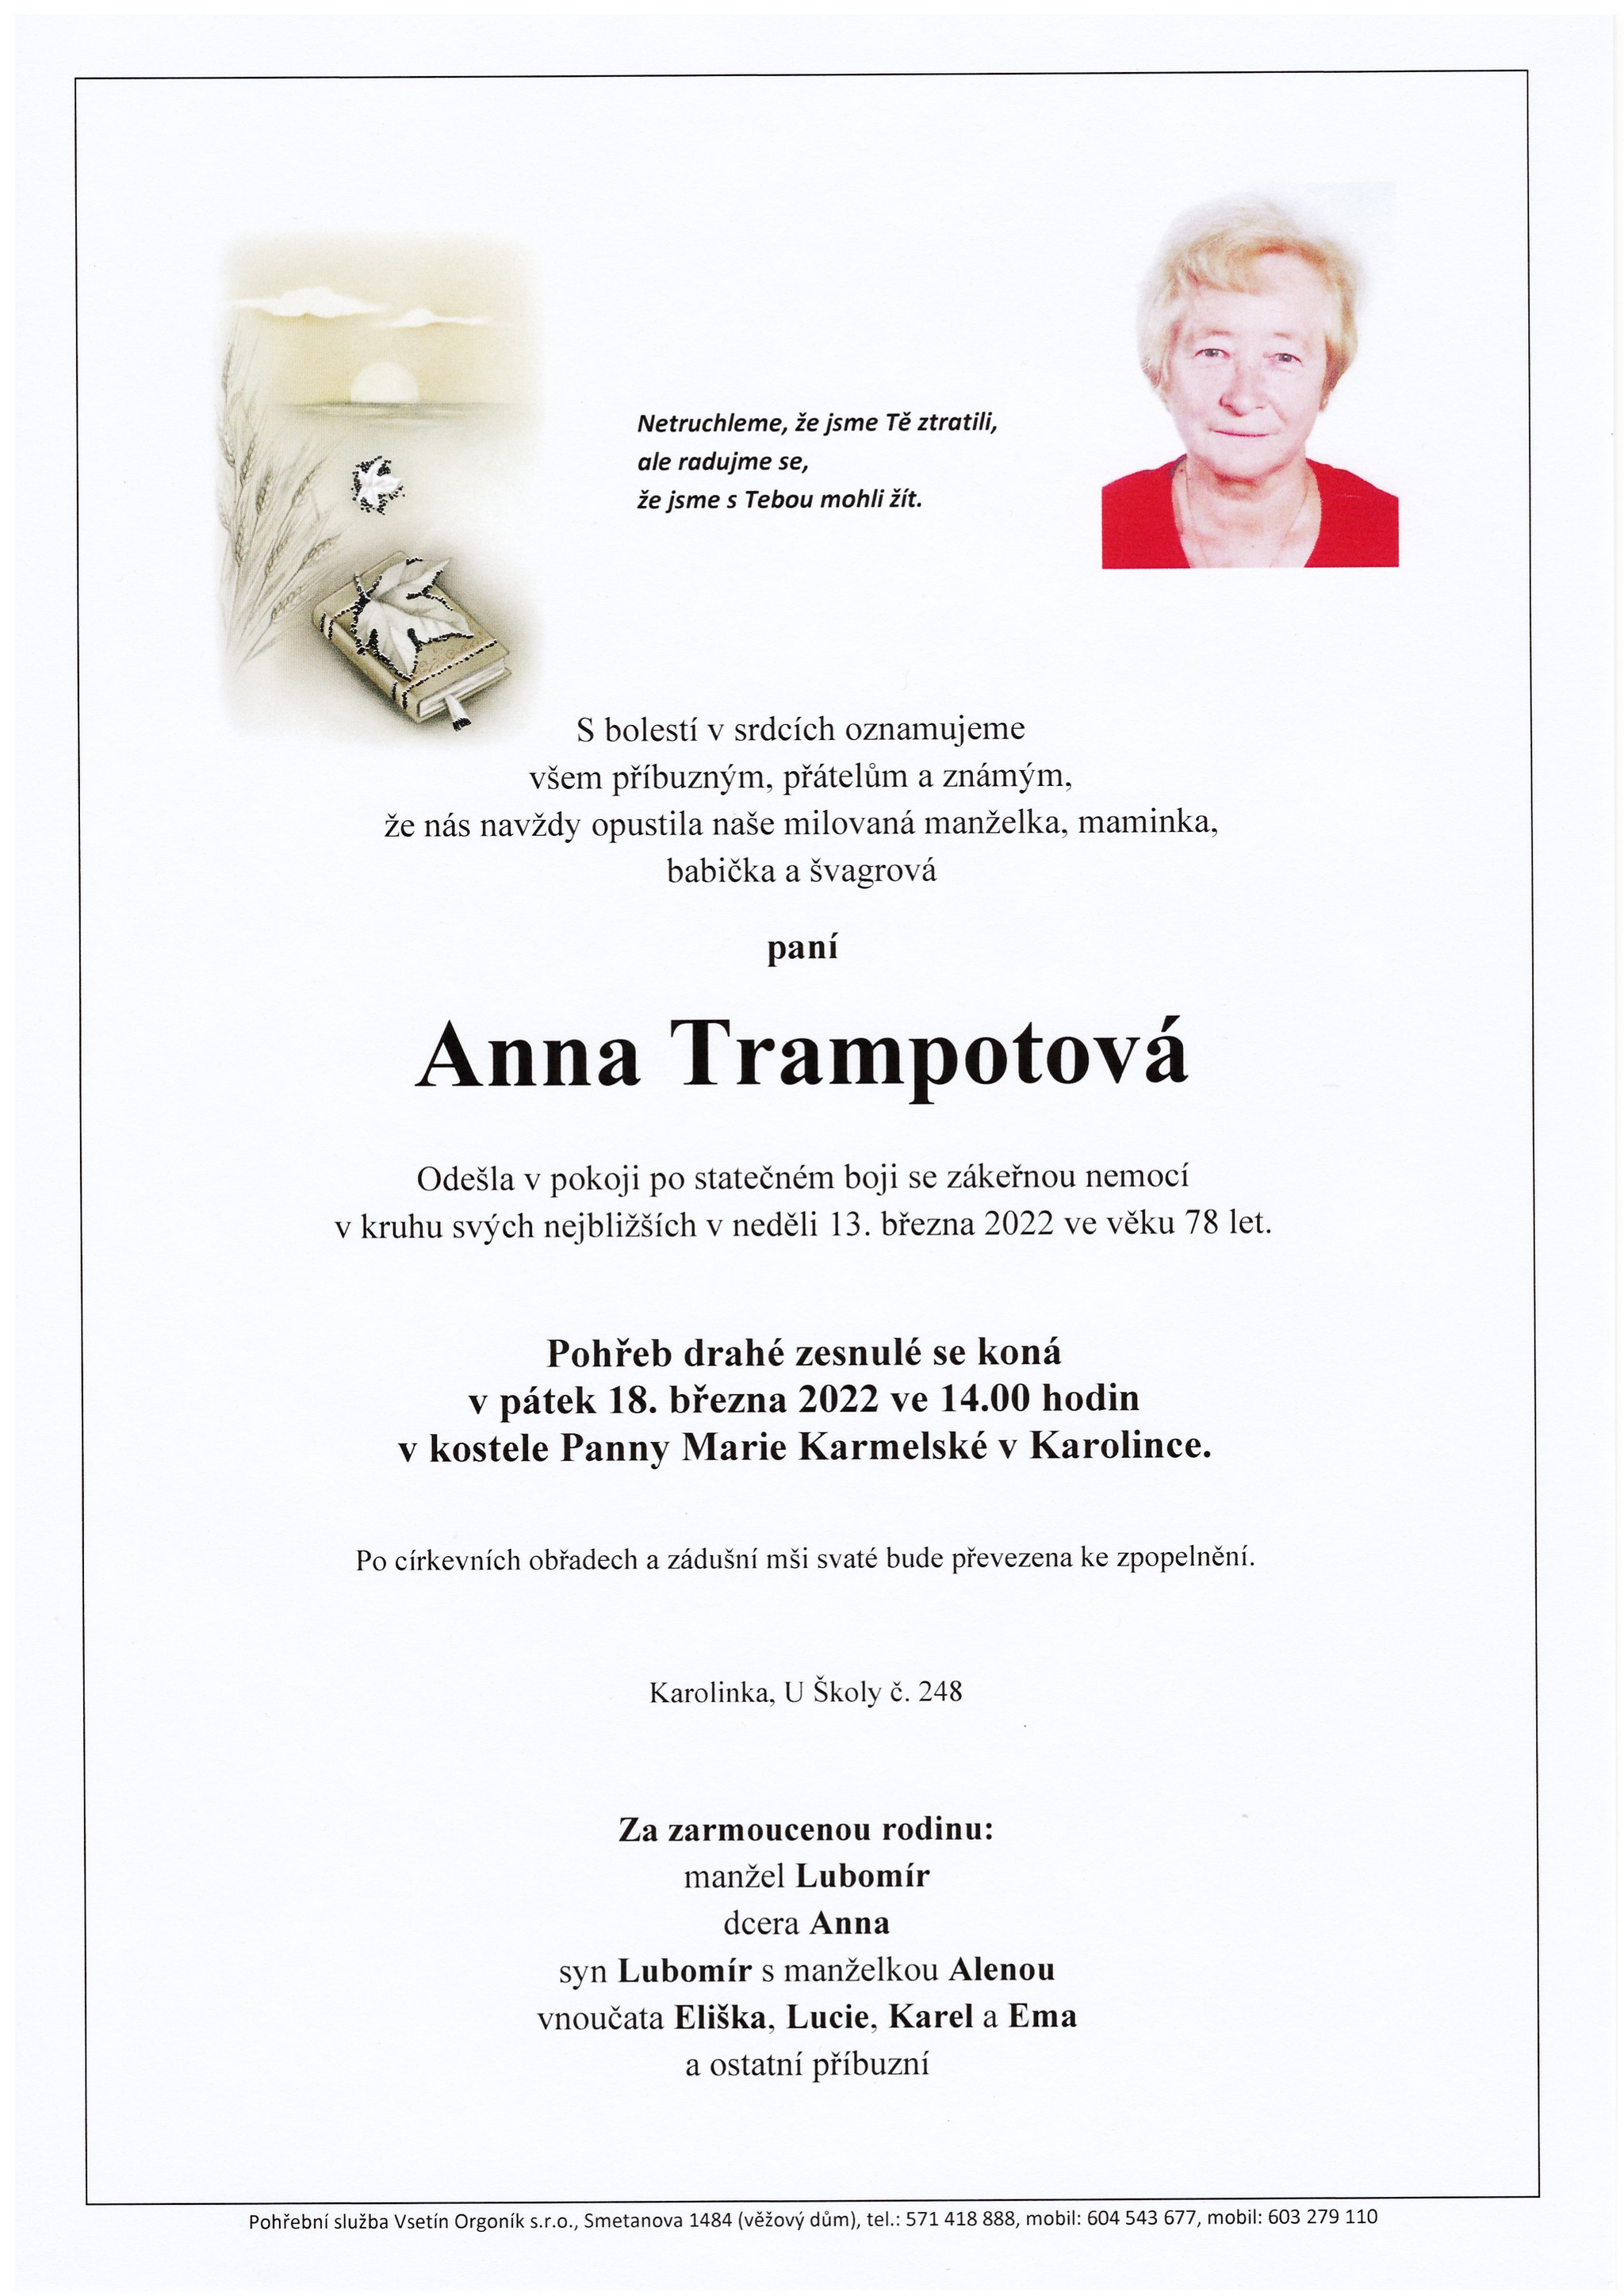 Anna Trampotová